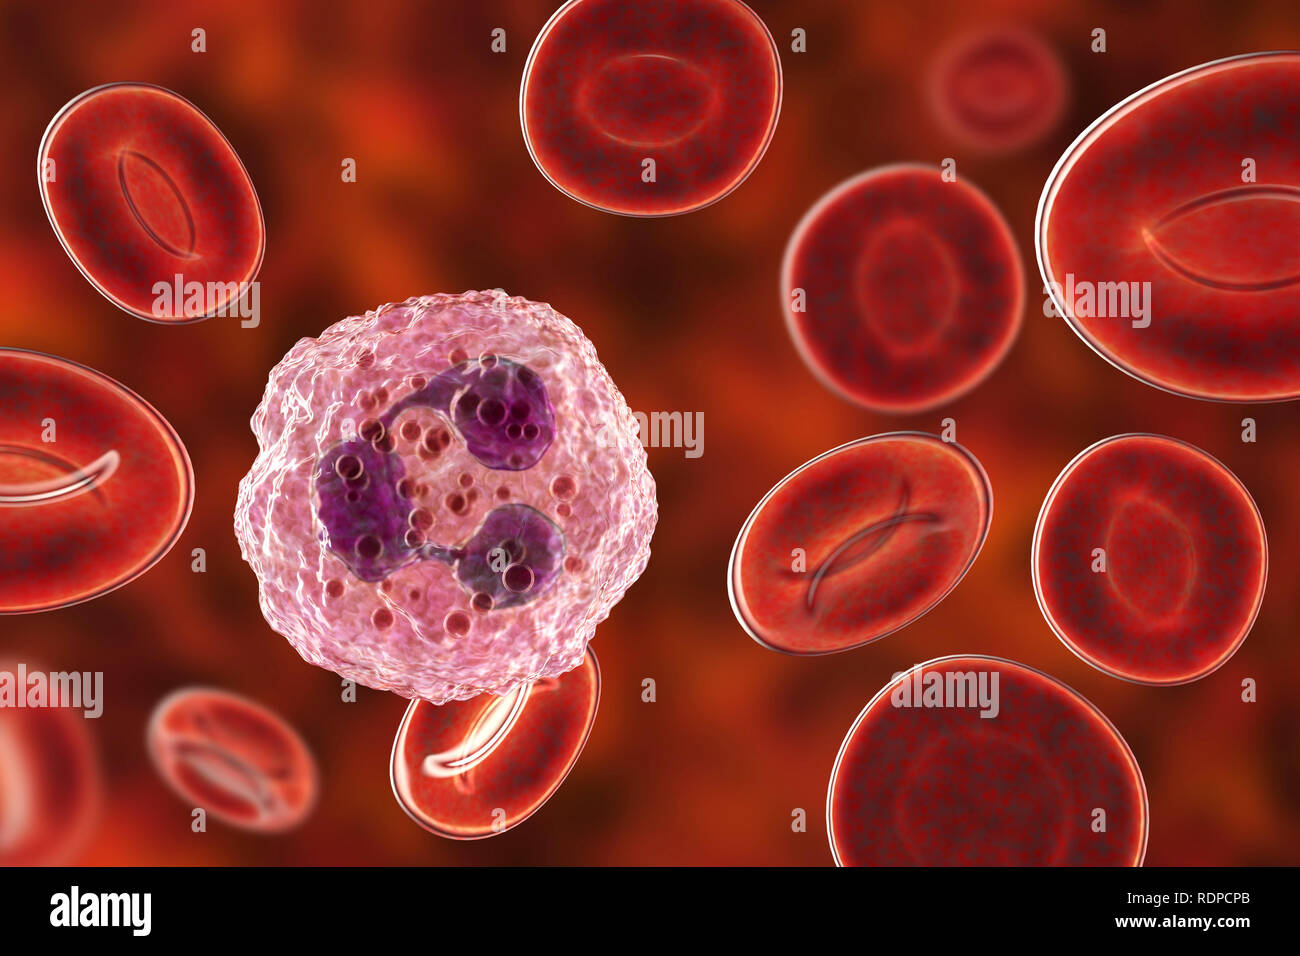 Los neutrófilos de glóbulos blancos y glóbulos rojos, equipo de ilustración. Los neutrófilos son los glóbulos blancos más abundantes y forman parte del sistema inmunitario del cuerpo. Foto de stock